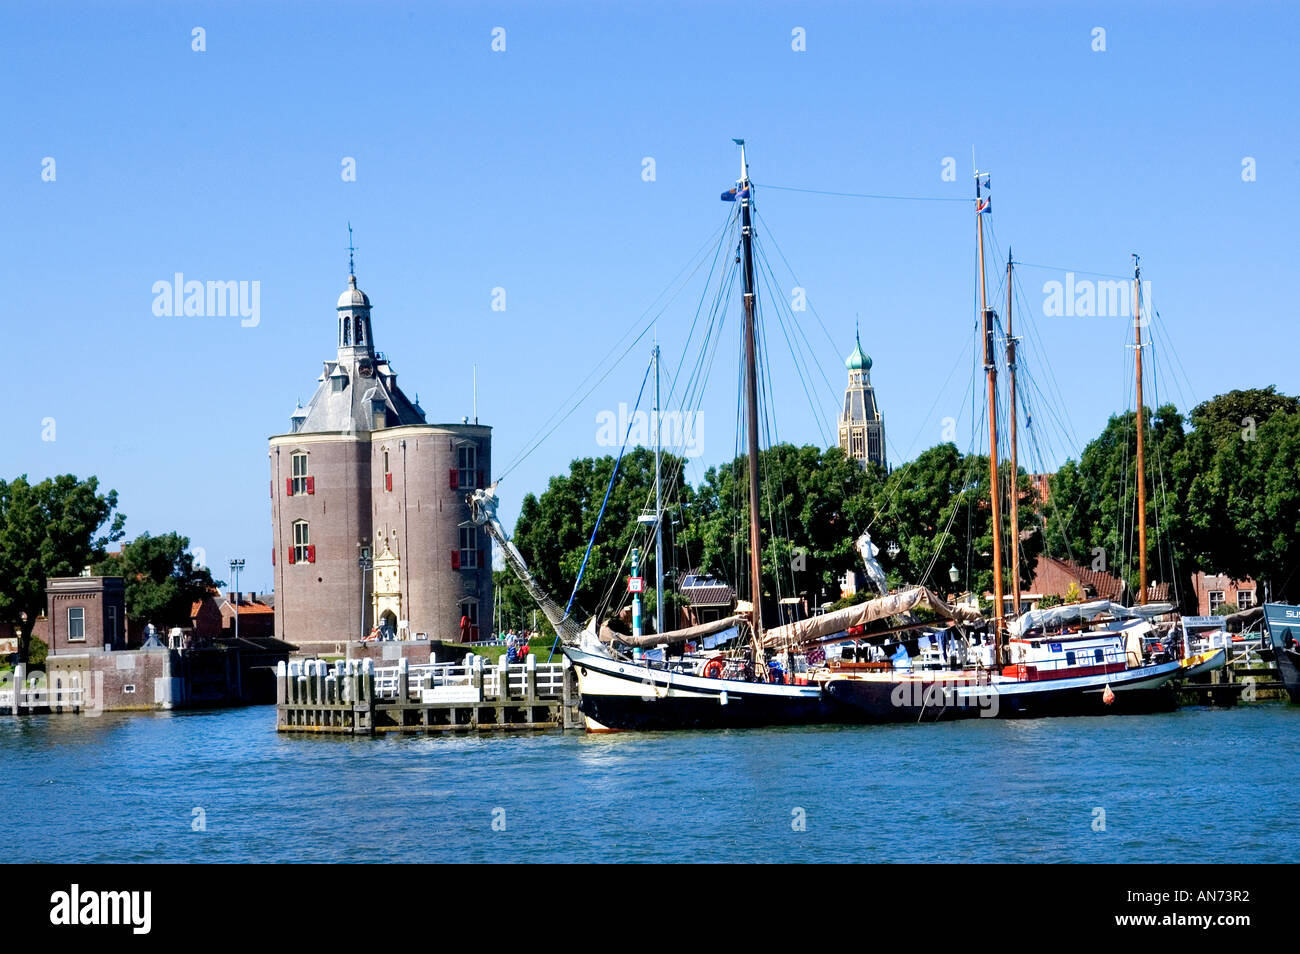 Drommedaris 1540 historischen Wehrturm Enkhuizen Niederlande Holland Hafen Hafen Stockfoto